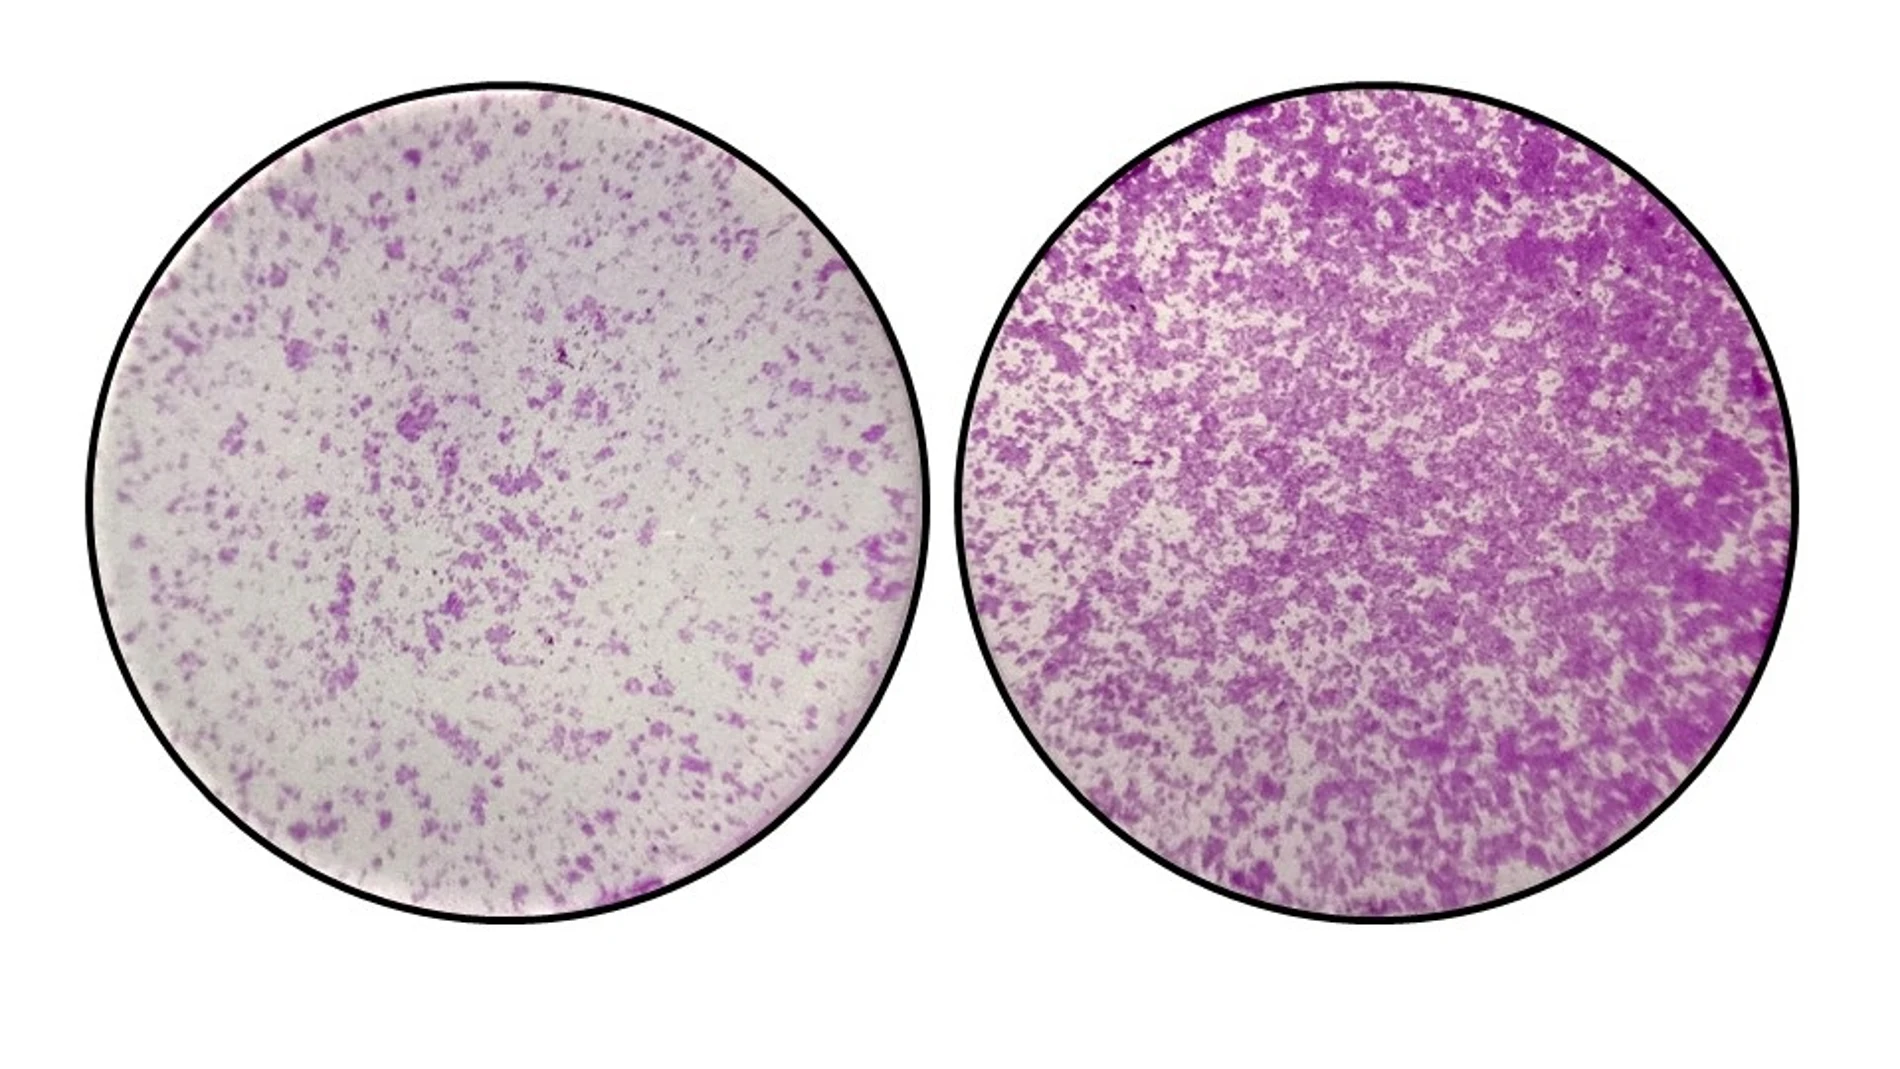 En la izquierda, se observan células del colon con niveles normales de TYW2 y la pieza “Y”. En la derecha, cuando sucede la perdida de TYW2 y el nucleótido “Y”, las células del cáncer de colon empiezan a migrar de forma descontrolada